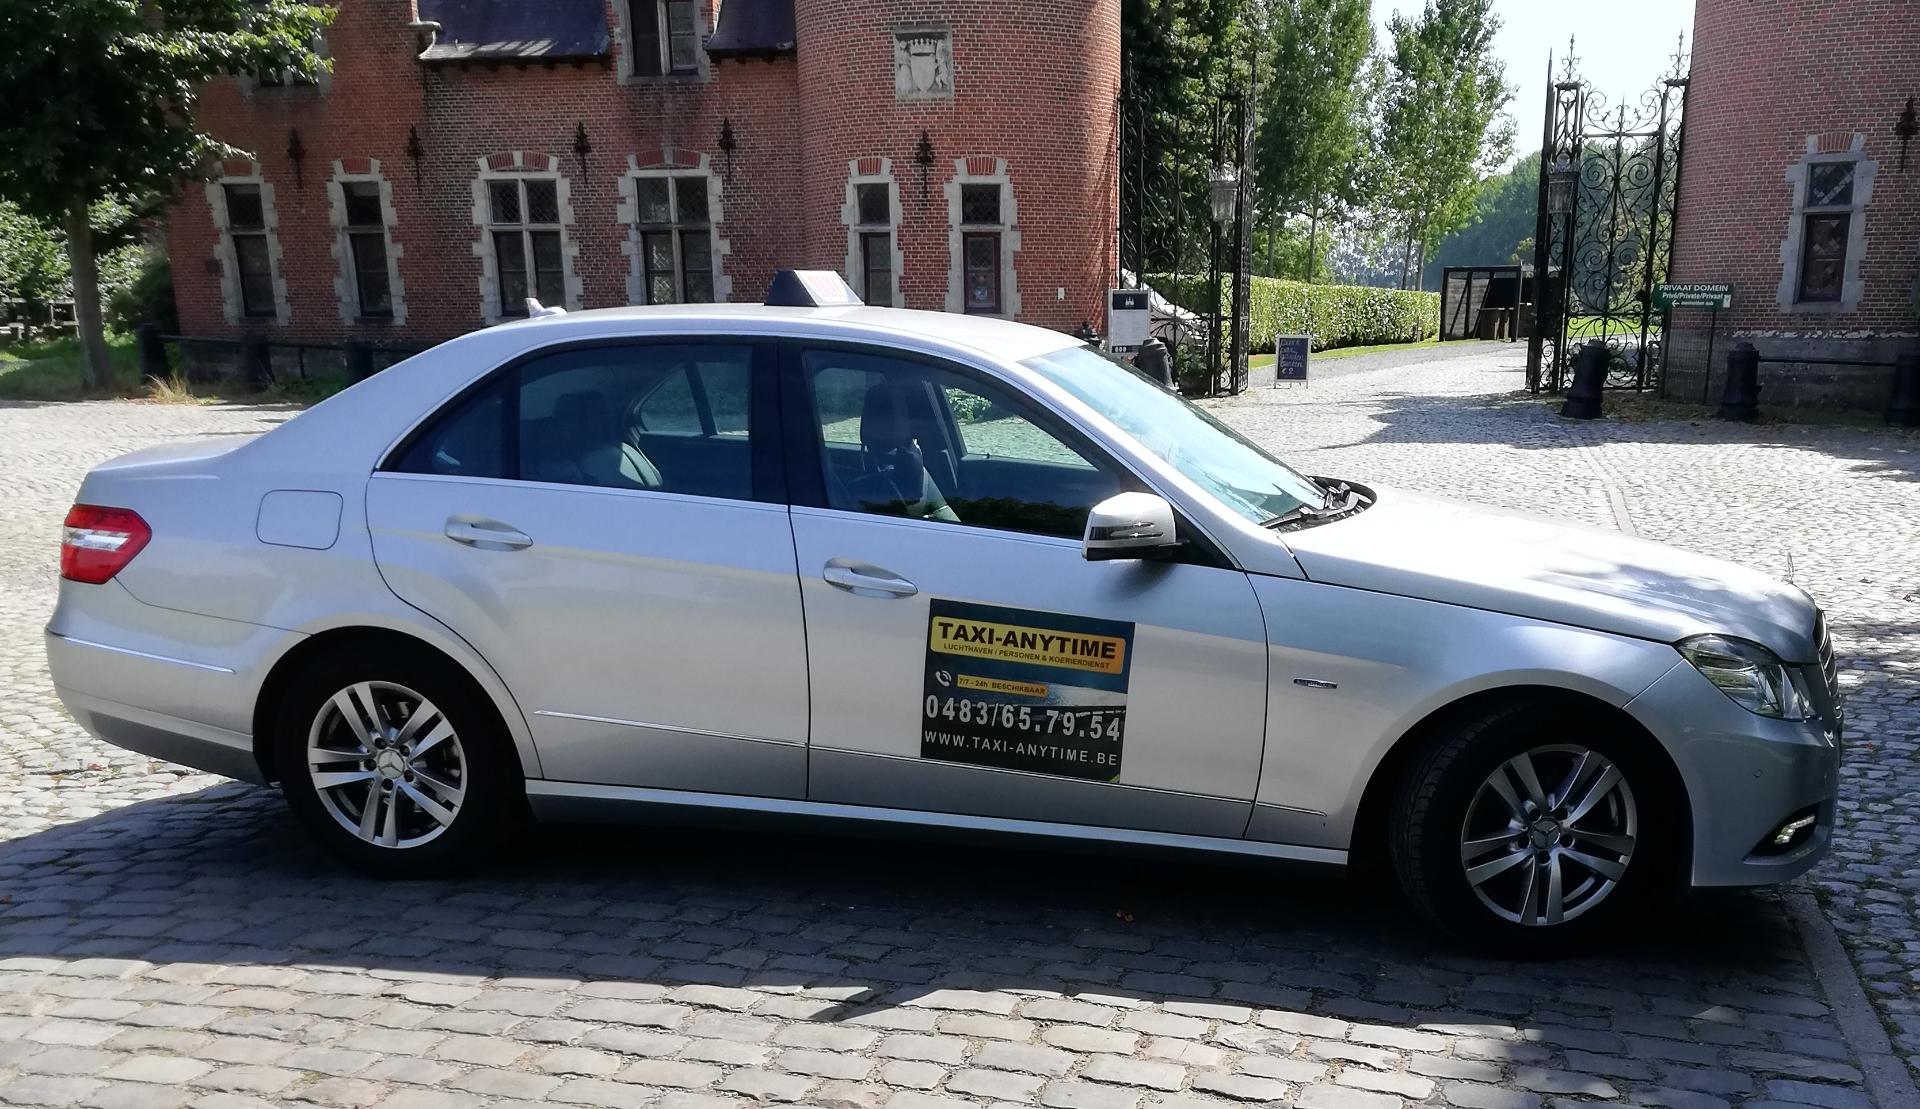 transportbedrijven Wondelgem Taxi Anytime